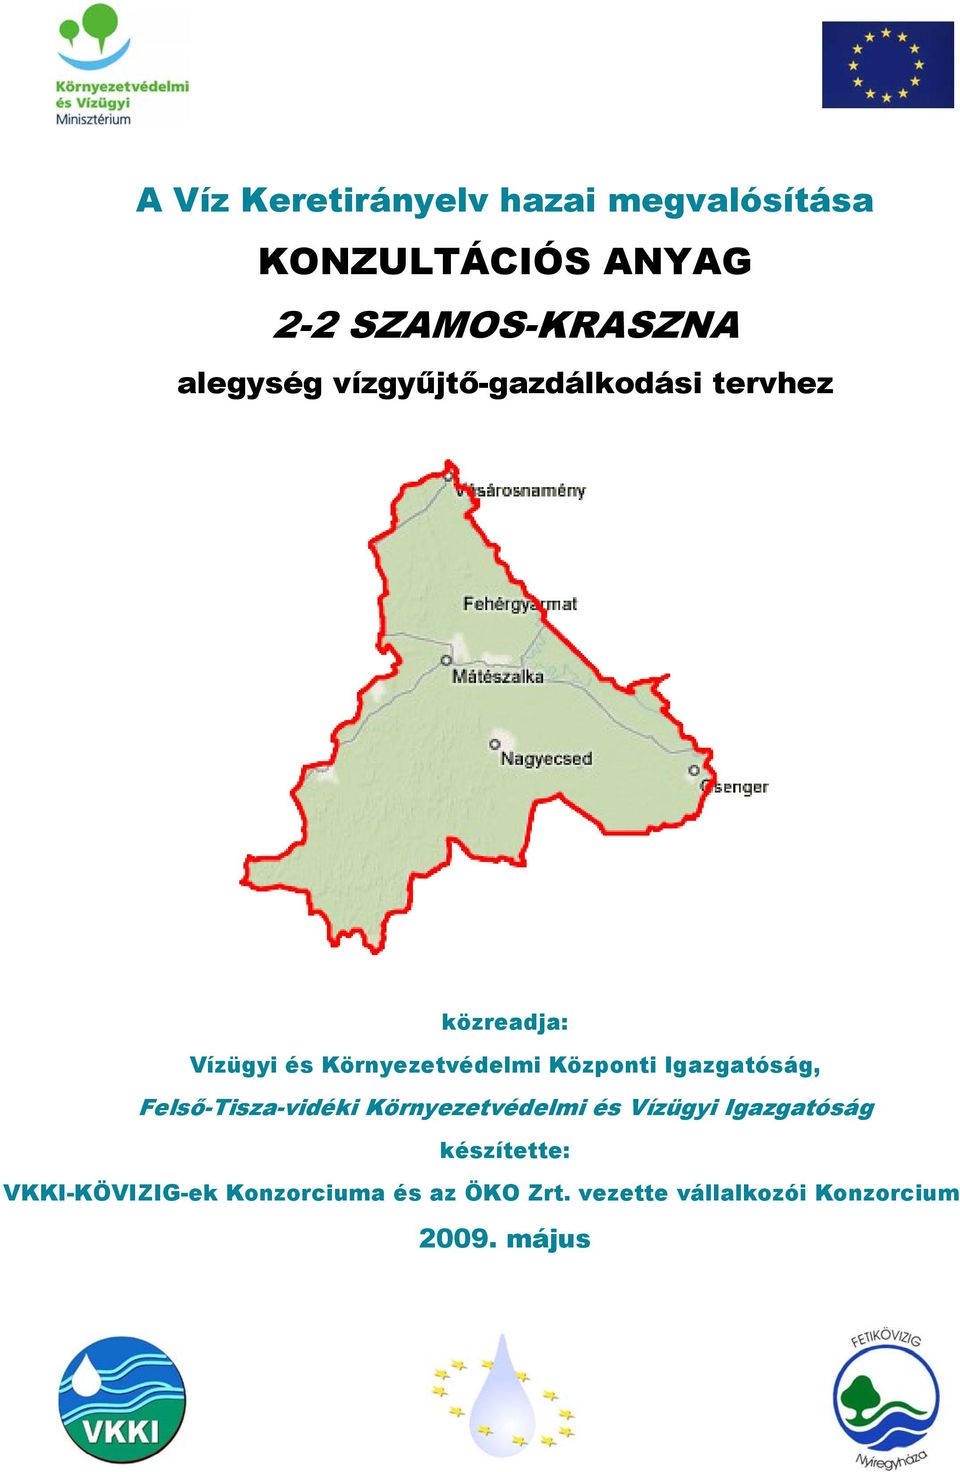 Központi Igazgatóság, Felső-Tisza-vidéki Környezetvédelmi és Vízügyi Igazgatóság